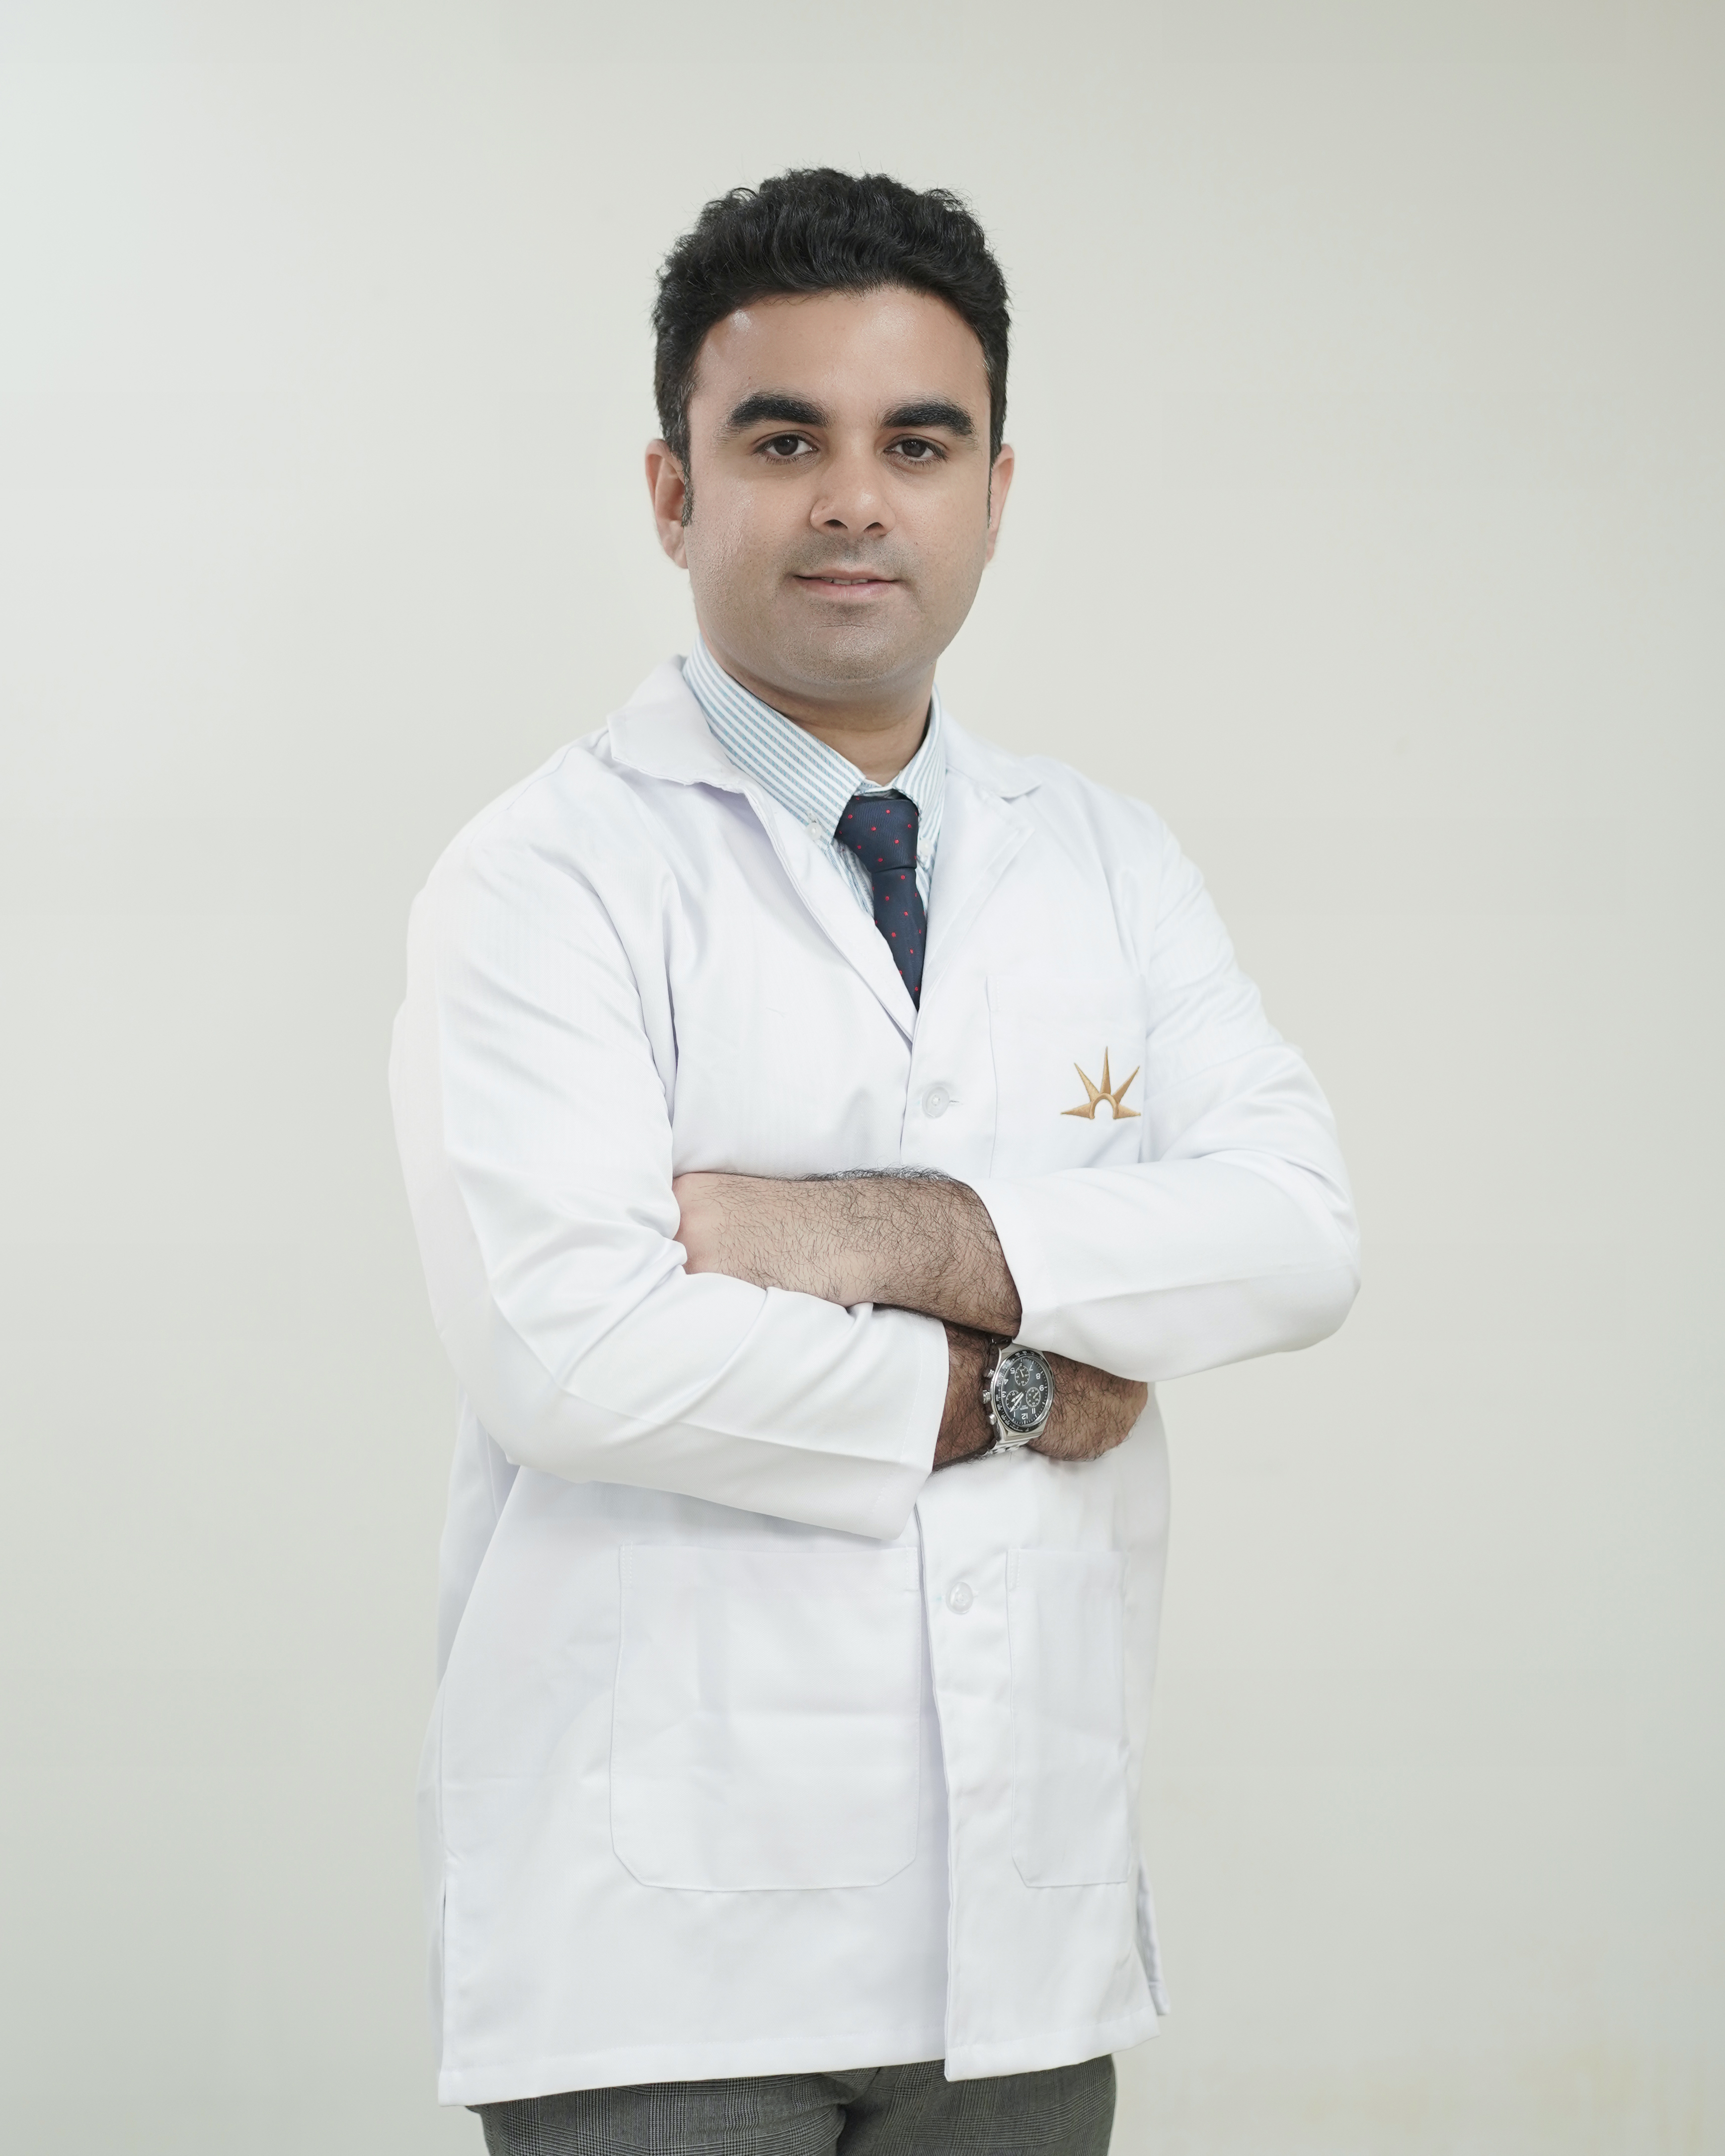 Dr. Karan Sehgal